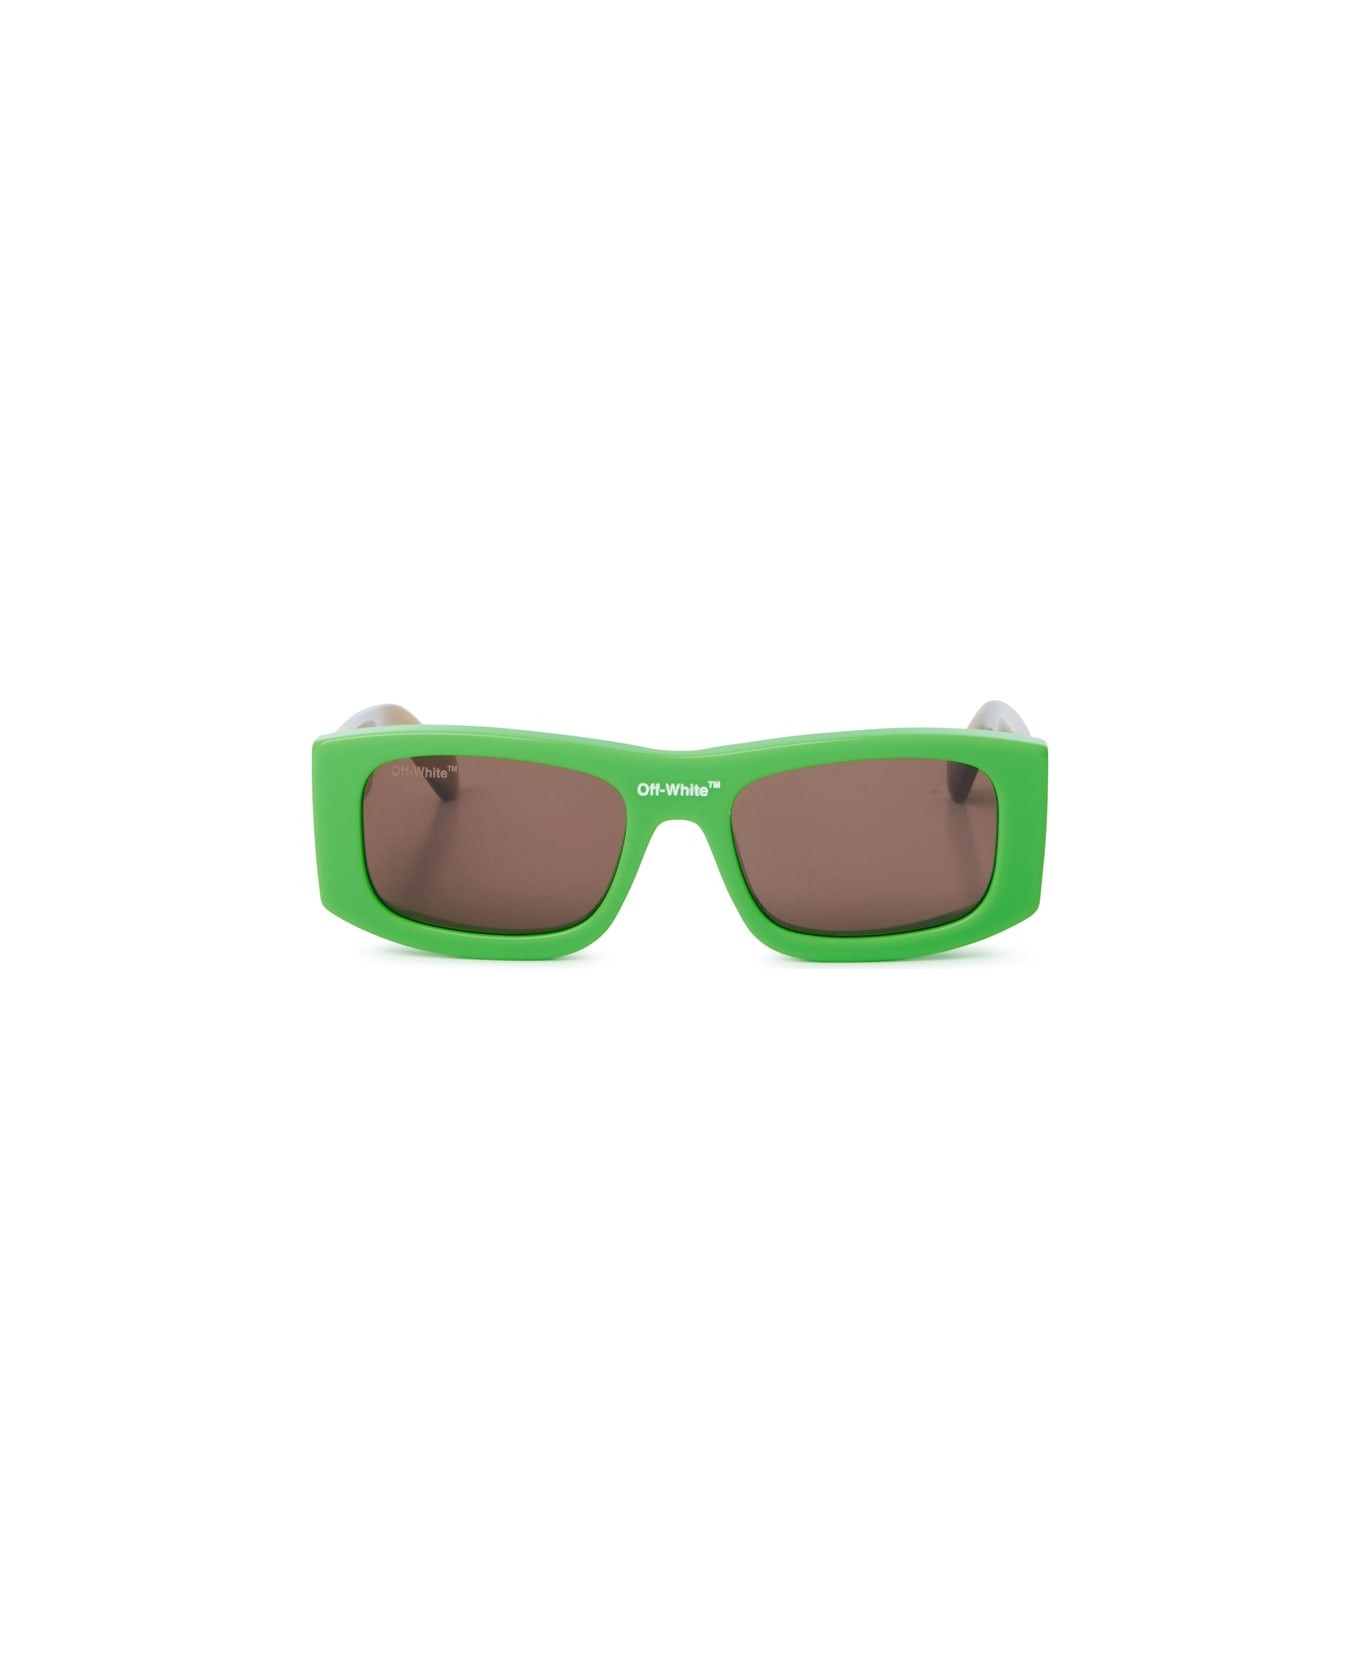 Off-White LUCIO SUNGLASSES Sunglasses - Green